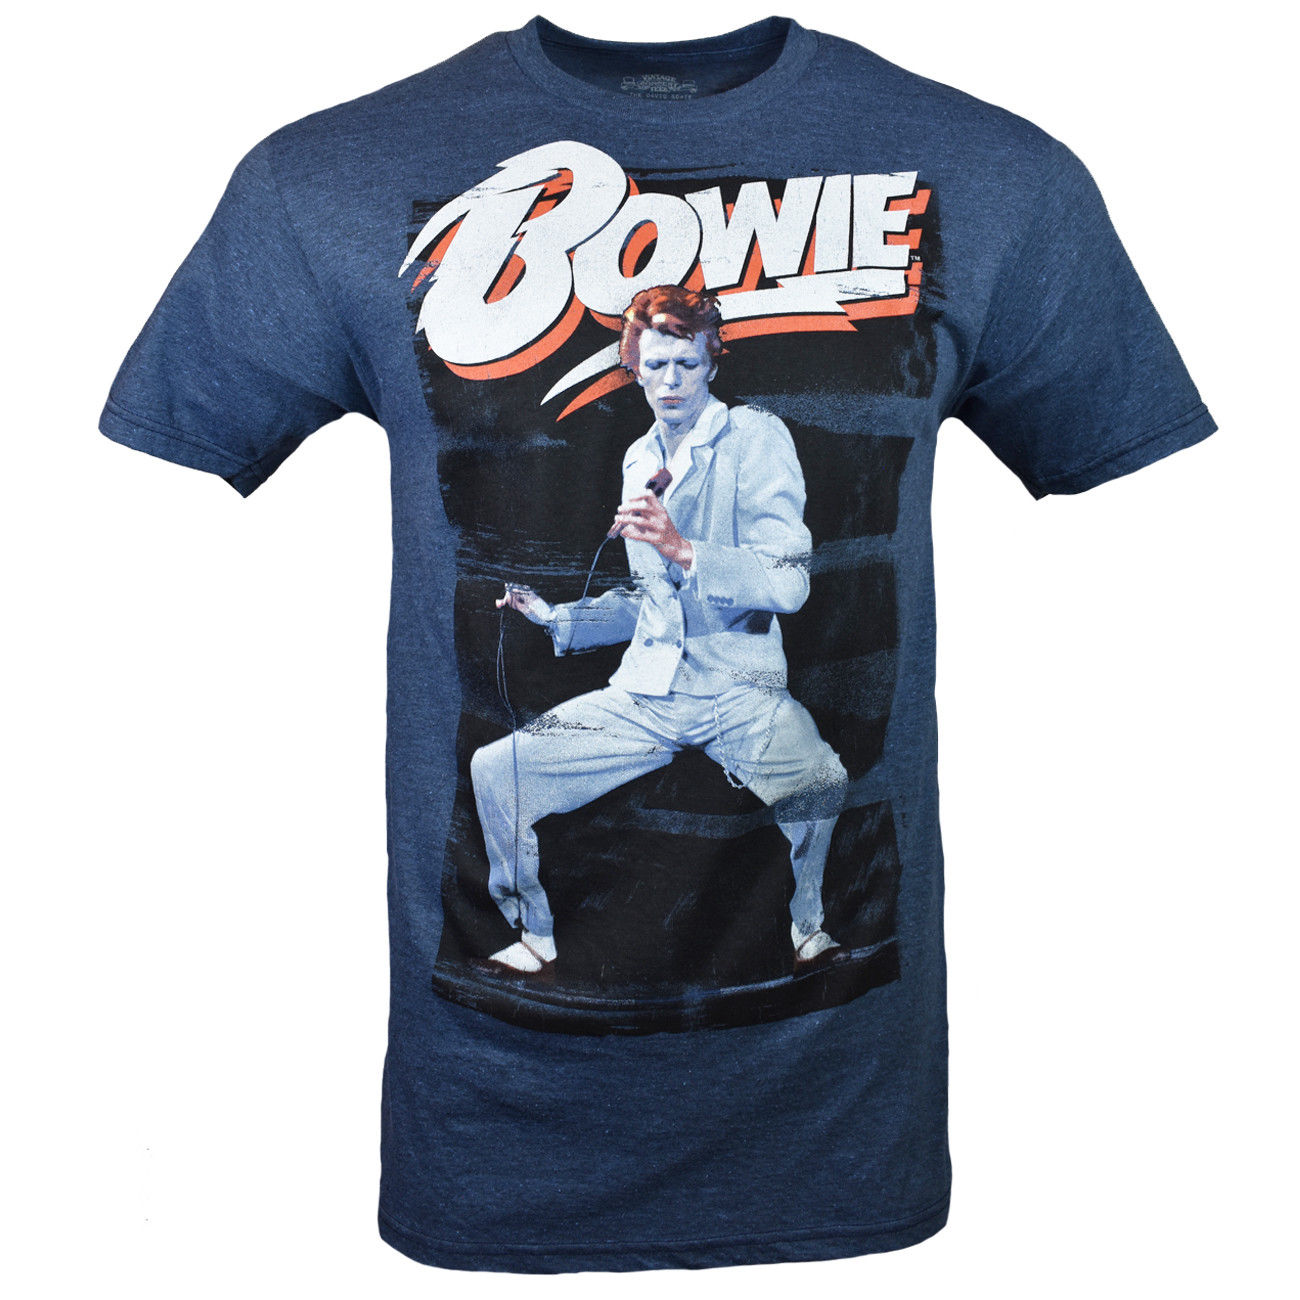 David Bowie Vintage Men's Graphic T-Shirt